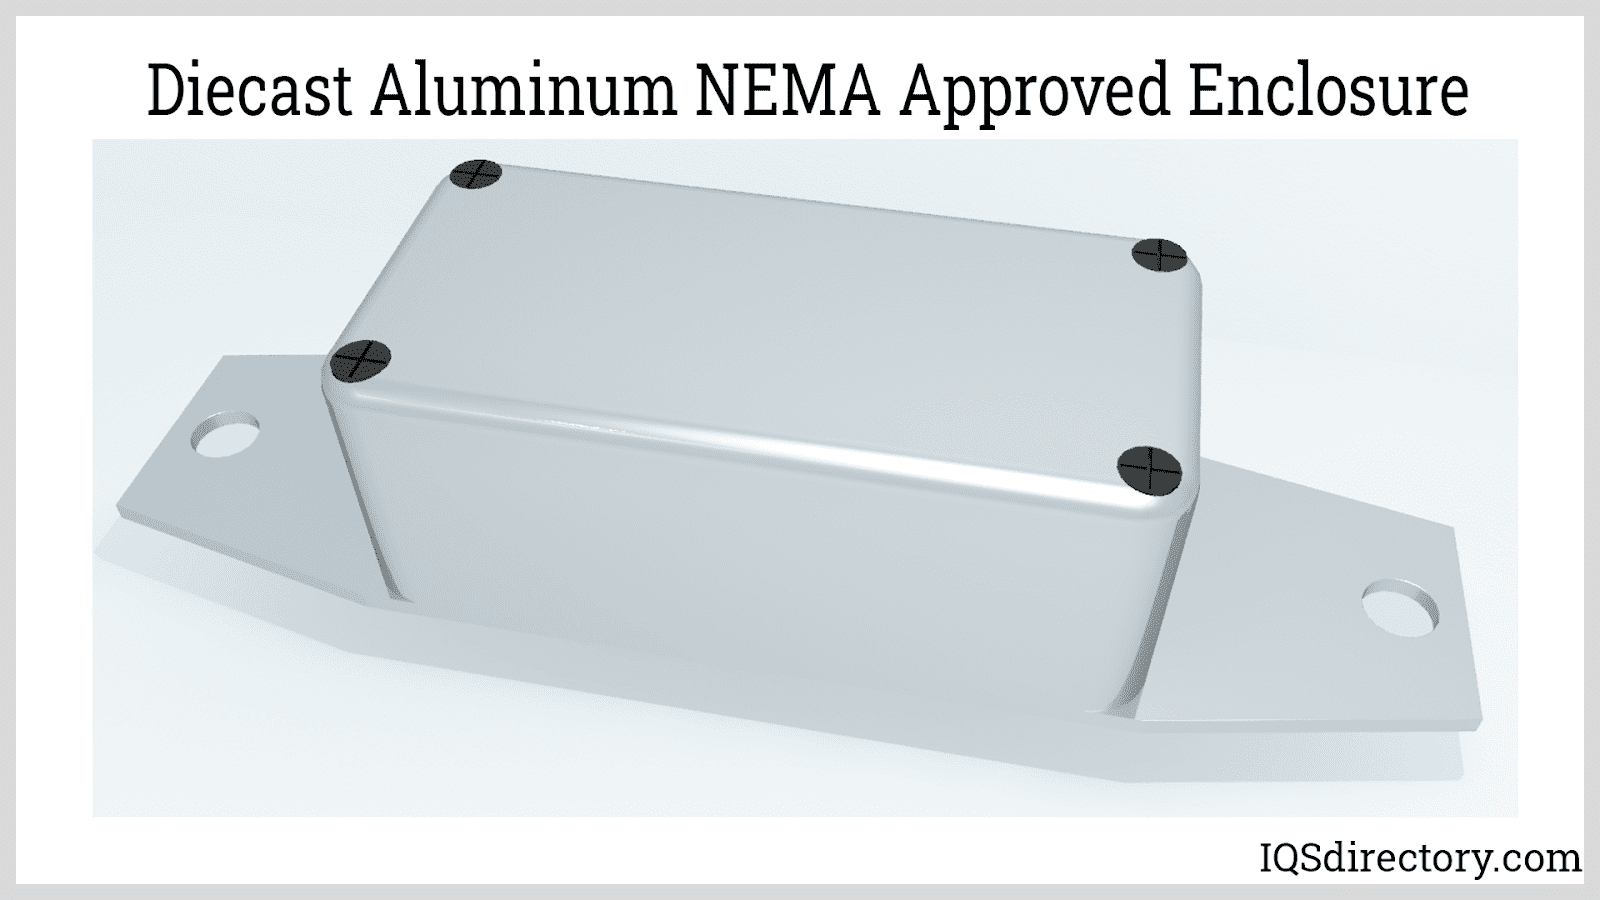 Diecast Aluminum NEMA Approved Enclosure